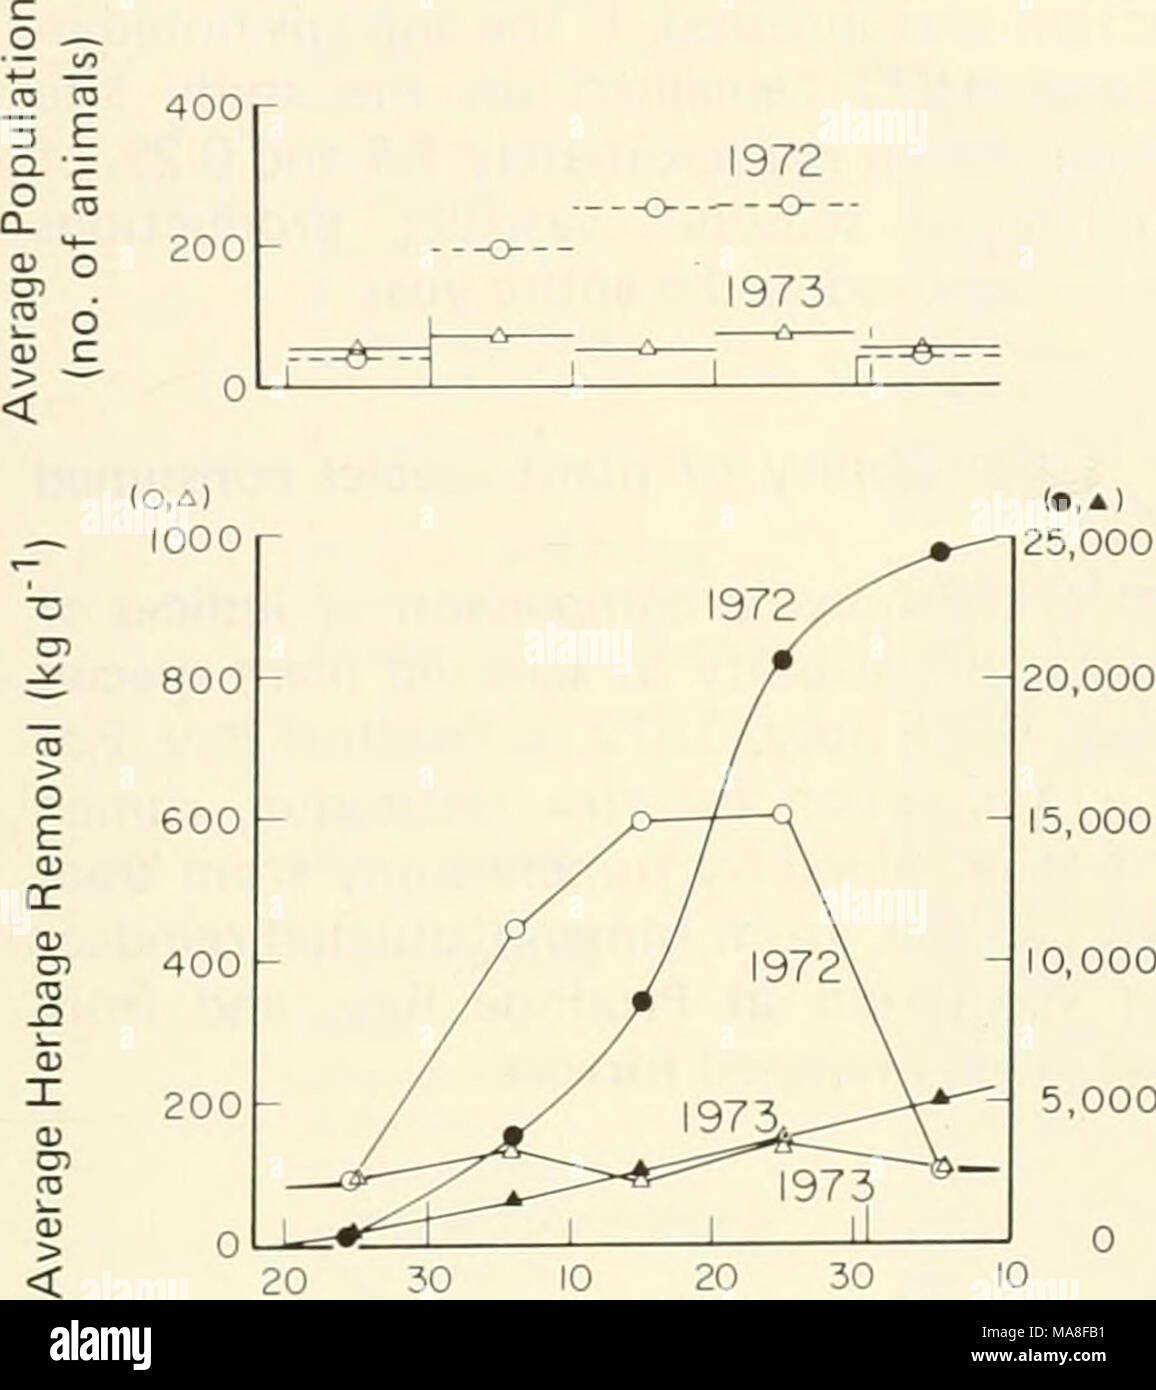 . Les enquêtes écologiques du biome de la toundra dans la région de Prudhoe Bay, en Alaska . 10 20 30 10 Juin Juillet Août en 0) J 5 000 '^ E o Fig. 12. L'herbage prévu la consommation cumulative par le caribou dans la zone d'étude de Prudhoe Bay à l'été 1972 et 1973. et la quantité d'herbages consommés dans la période de l'étude était d'environ 5 400 kg. (D) L'estimation de la taille de l'aire d'étude. L'interprétation donnée aux valeurs de la récolte n'a plus de sens de l'écosystème dans son ensemble si l'admission ou la récolte est exprimé par unité de surface et par rapport à la production primaire. Comme indiqué dans la section sur les méthodes, les populations de caribou Banque D'Images